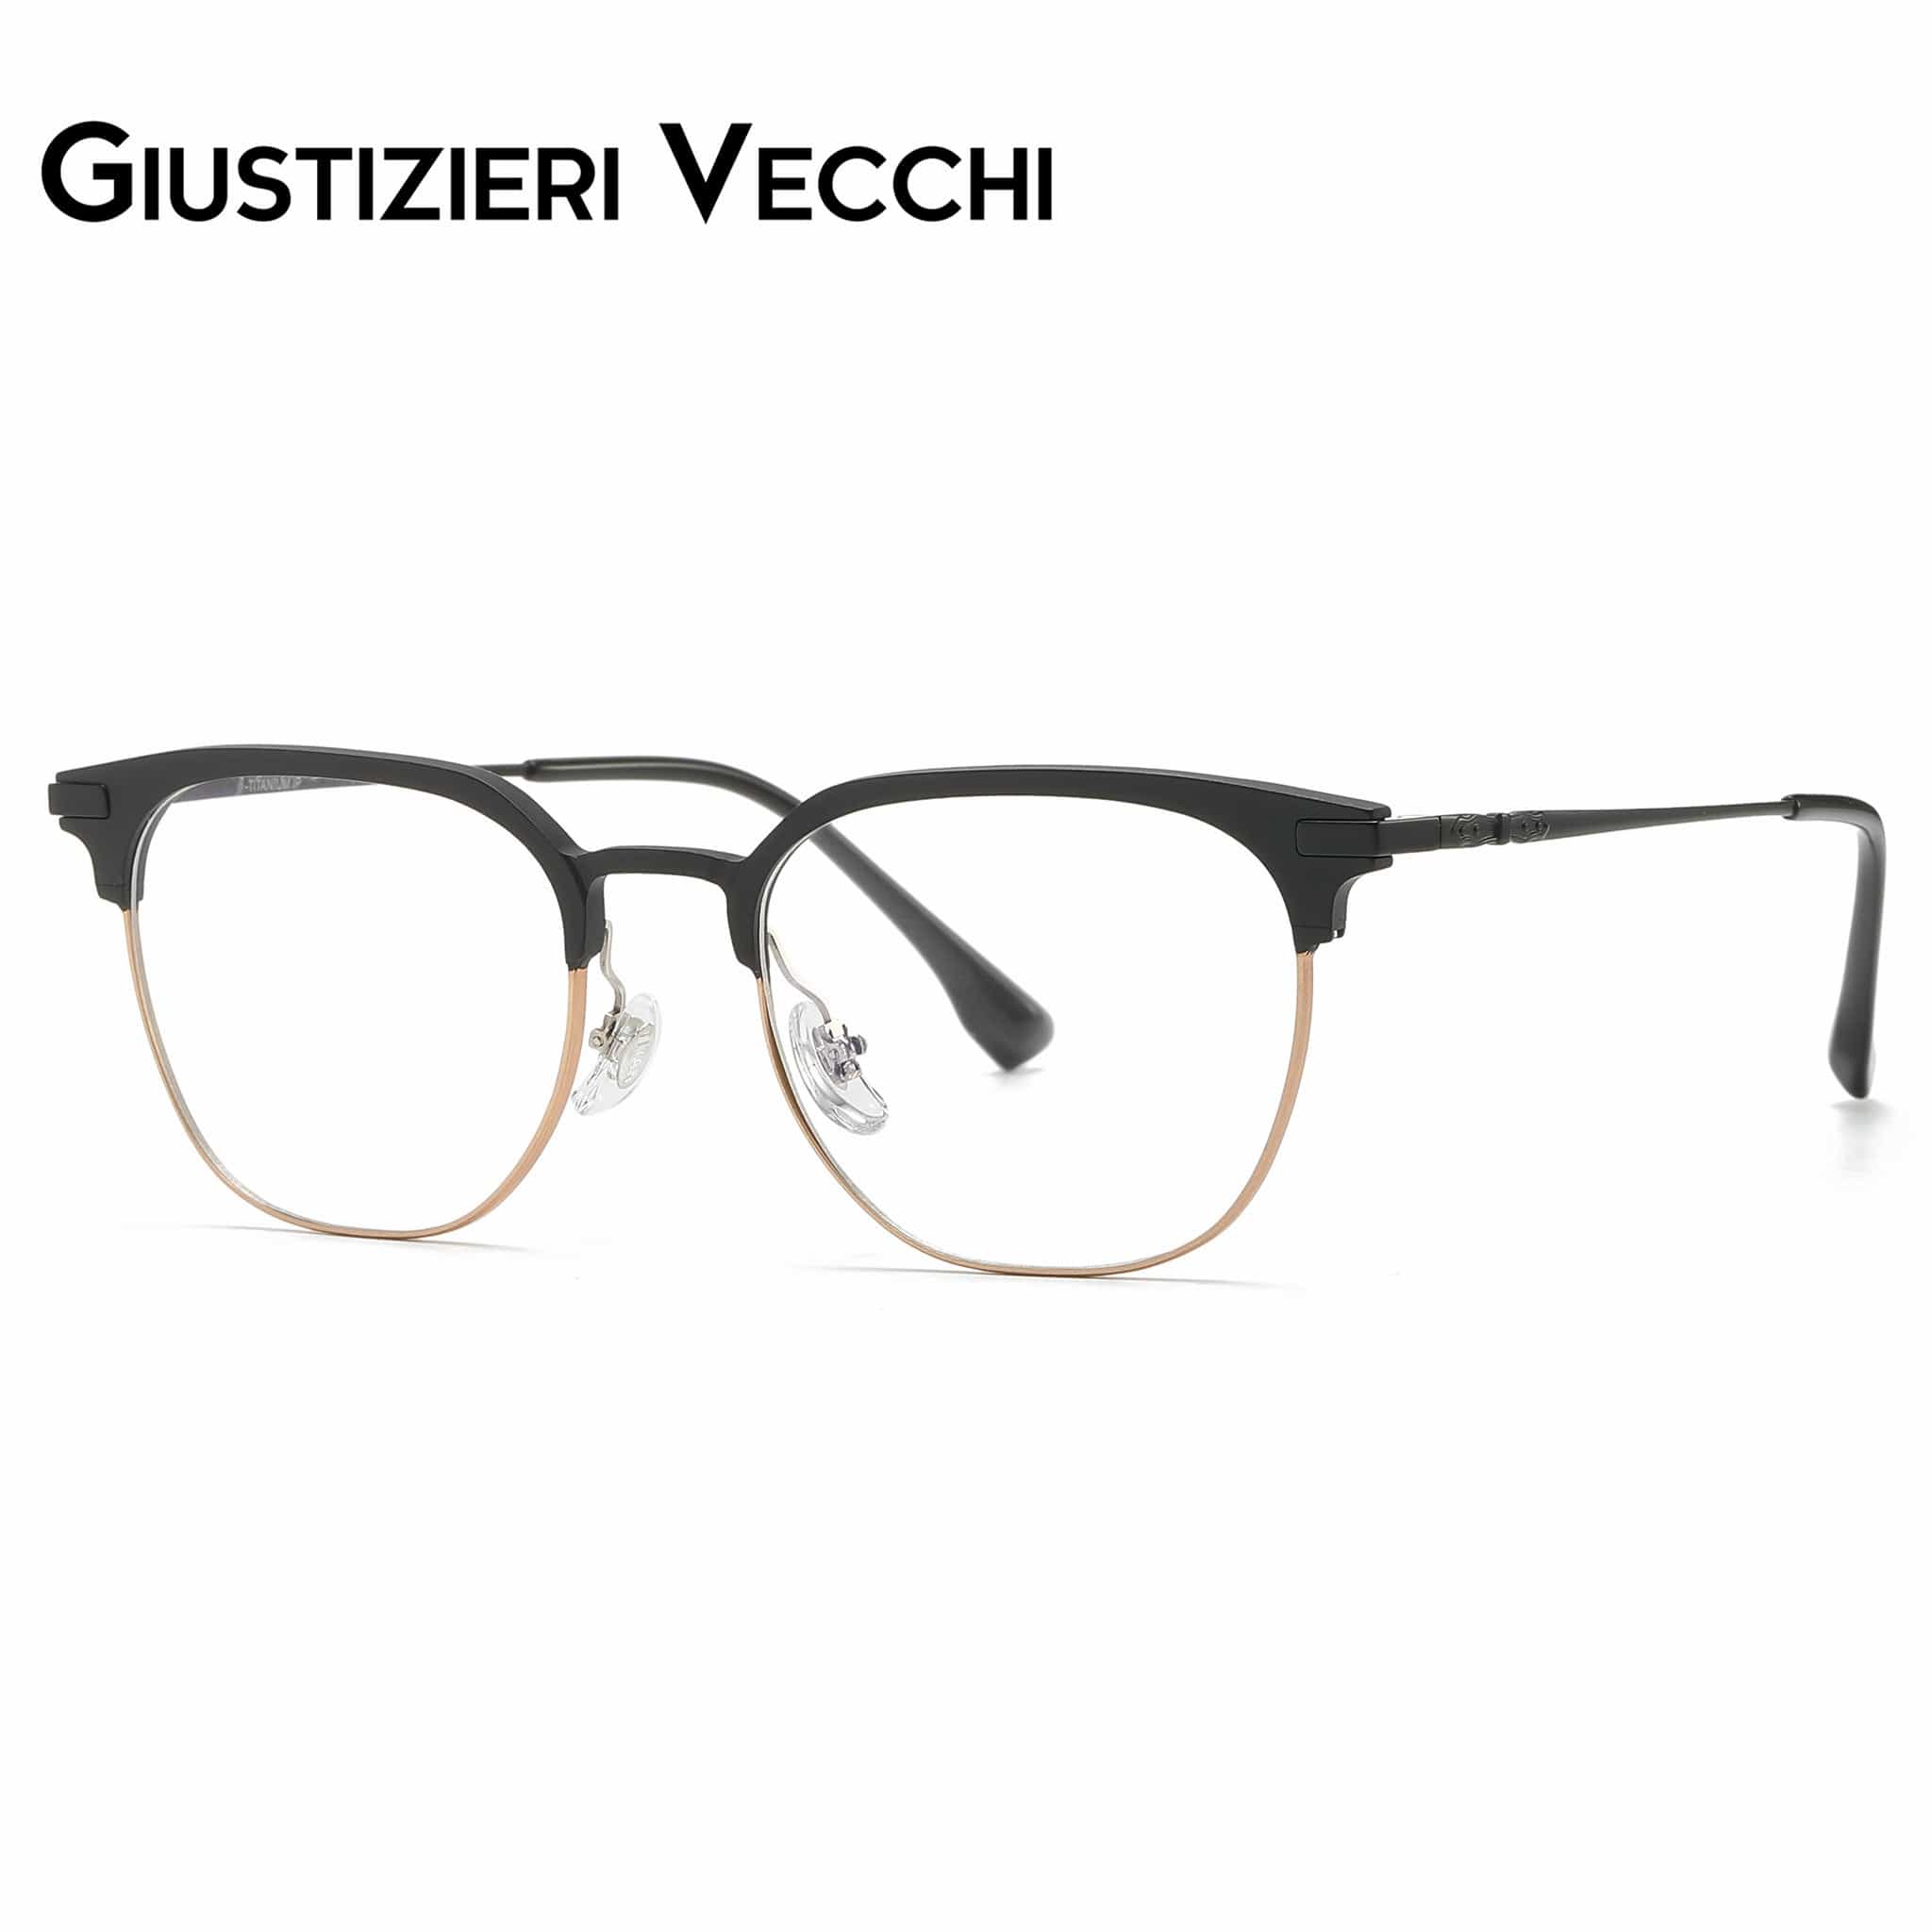 GIUSTIZIERI VECCHI Eyeglasses MindHaze Duo